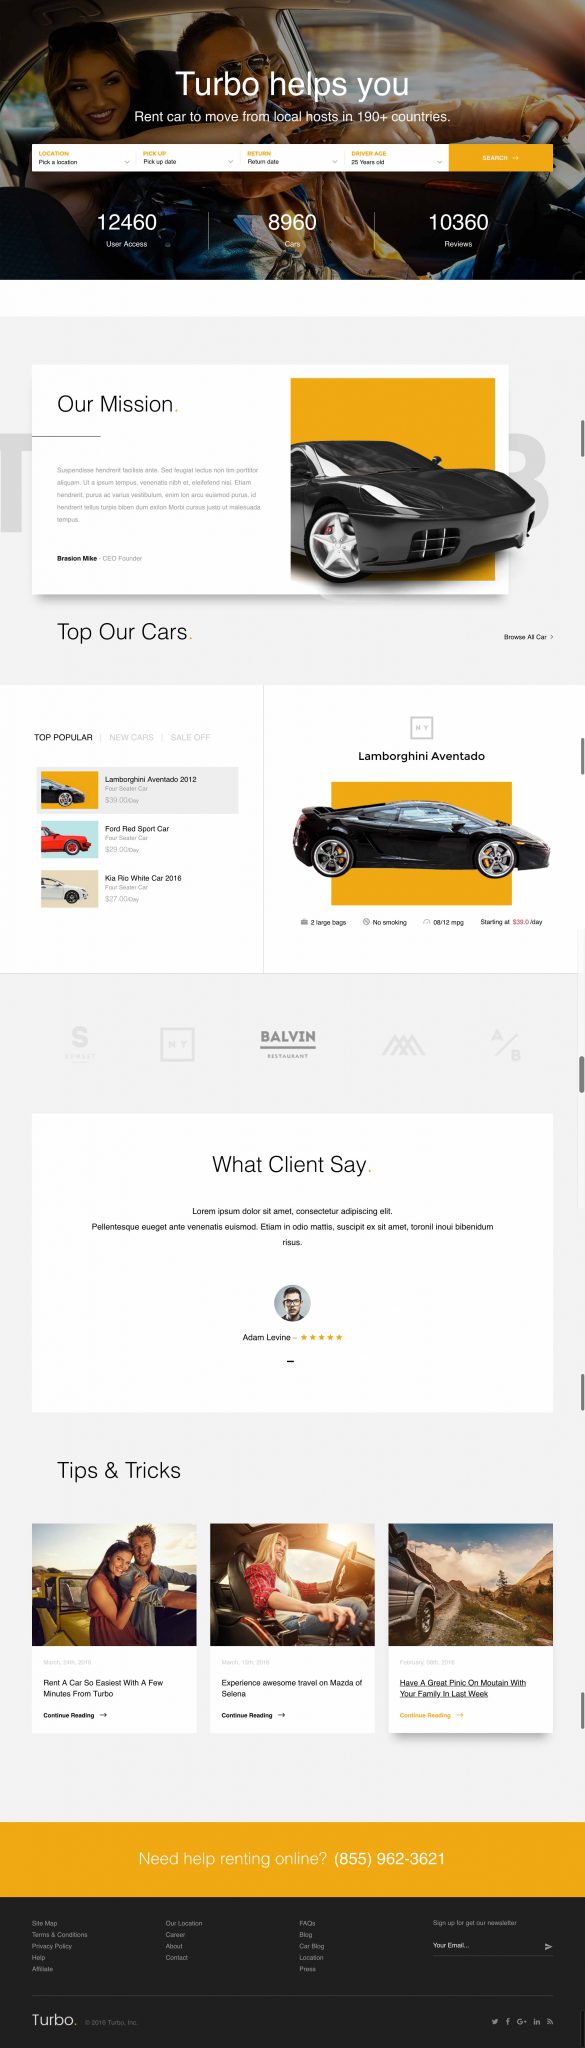 Mẫu thiết kế website thuê xe du lịch